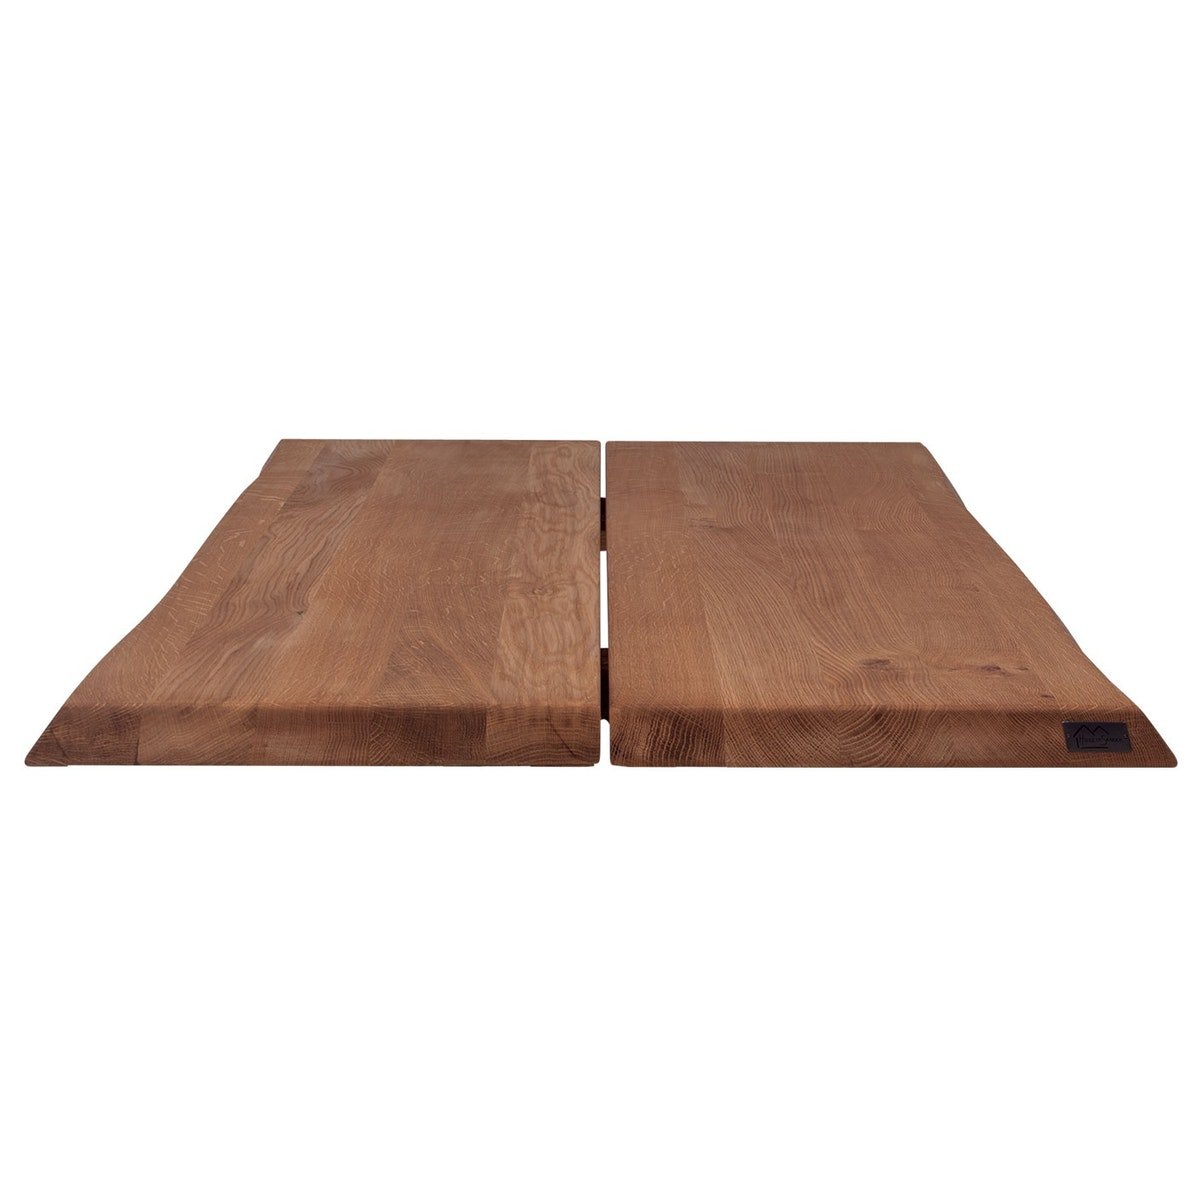 7: Hugin, Bordplade til sofa- eller cafébord, Egetræ by House of Sander (H: 4 cm. B: 80 cm. L: 80 cm., Mocca)